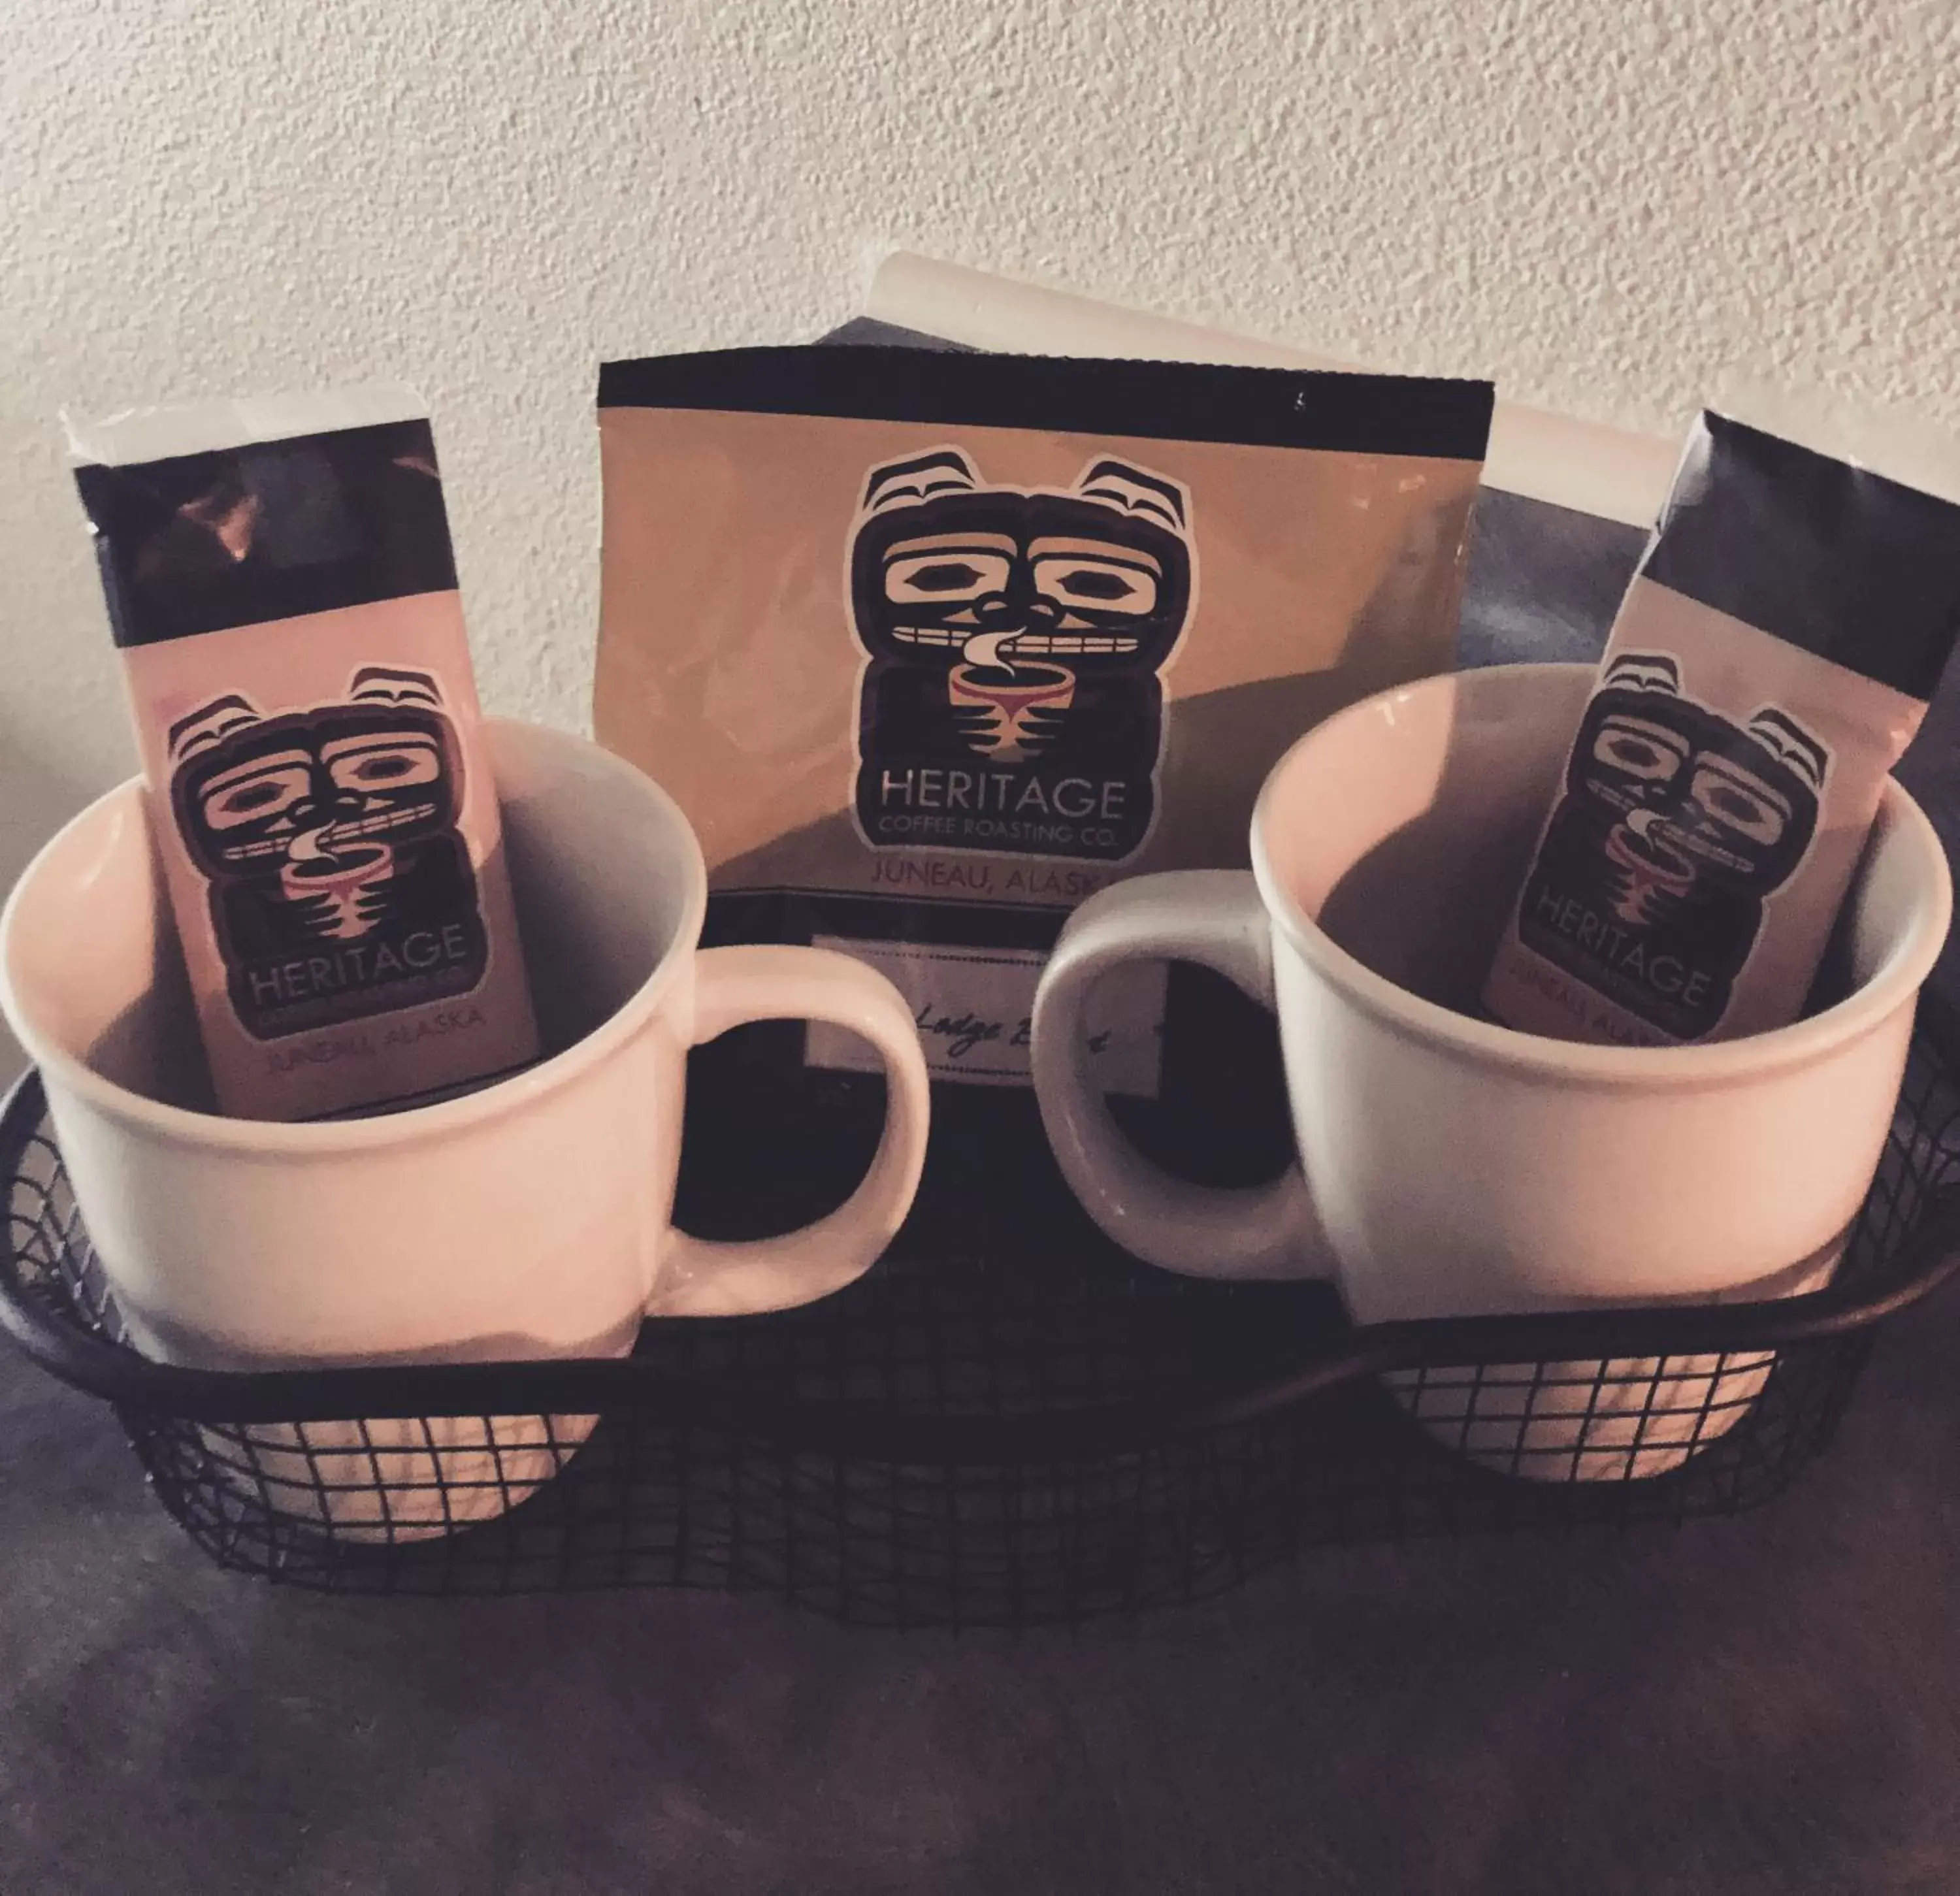 Coffee/tea facilities in Aspen Suites Hotel Anchorage